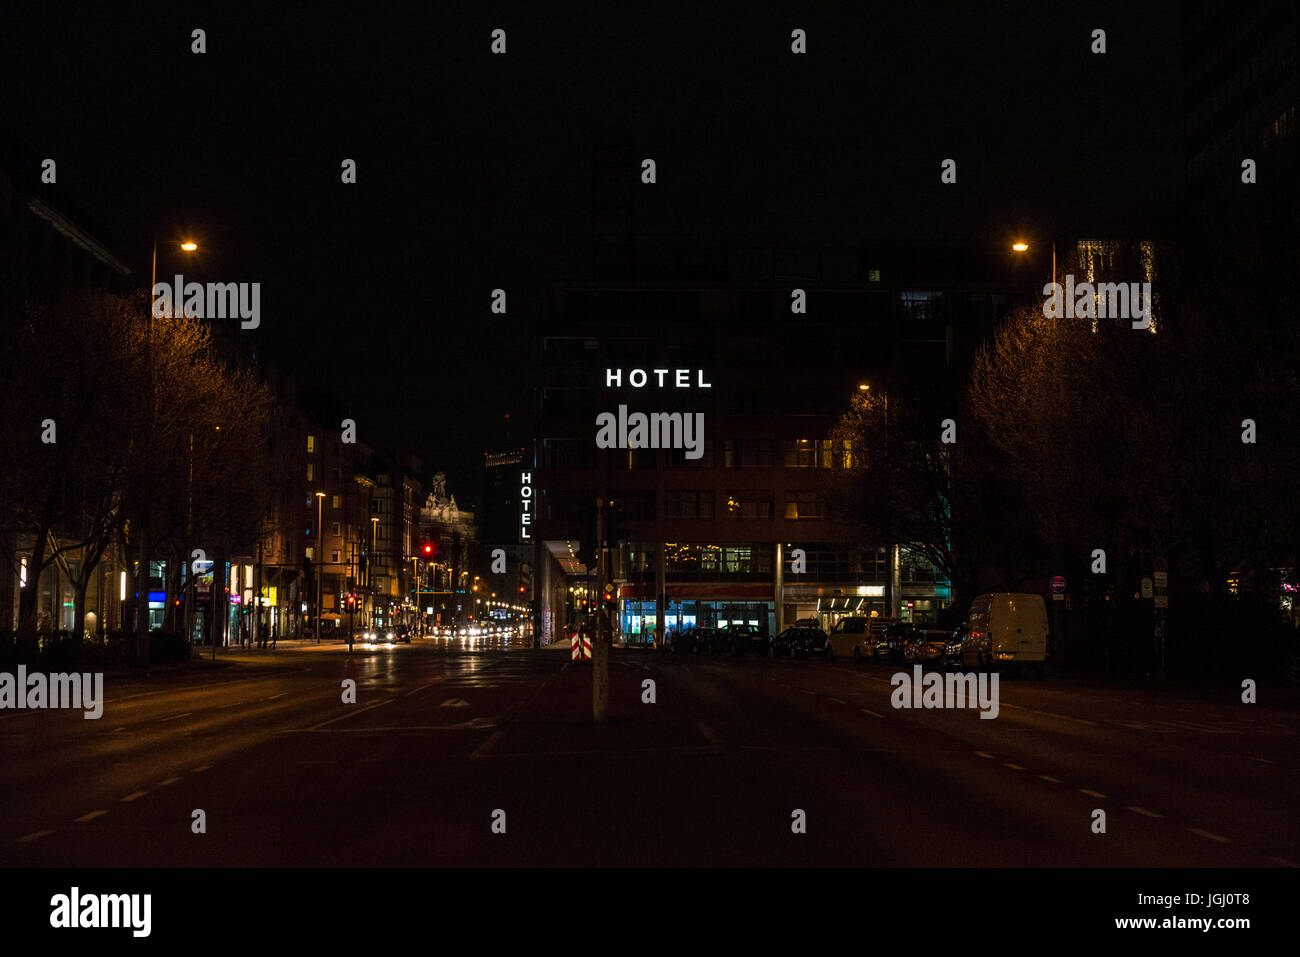 Hotel firmar iluminada por la noche en una calle del centro de Berlín, Alemania Foto de stock